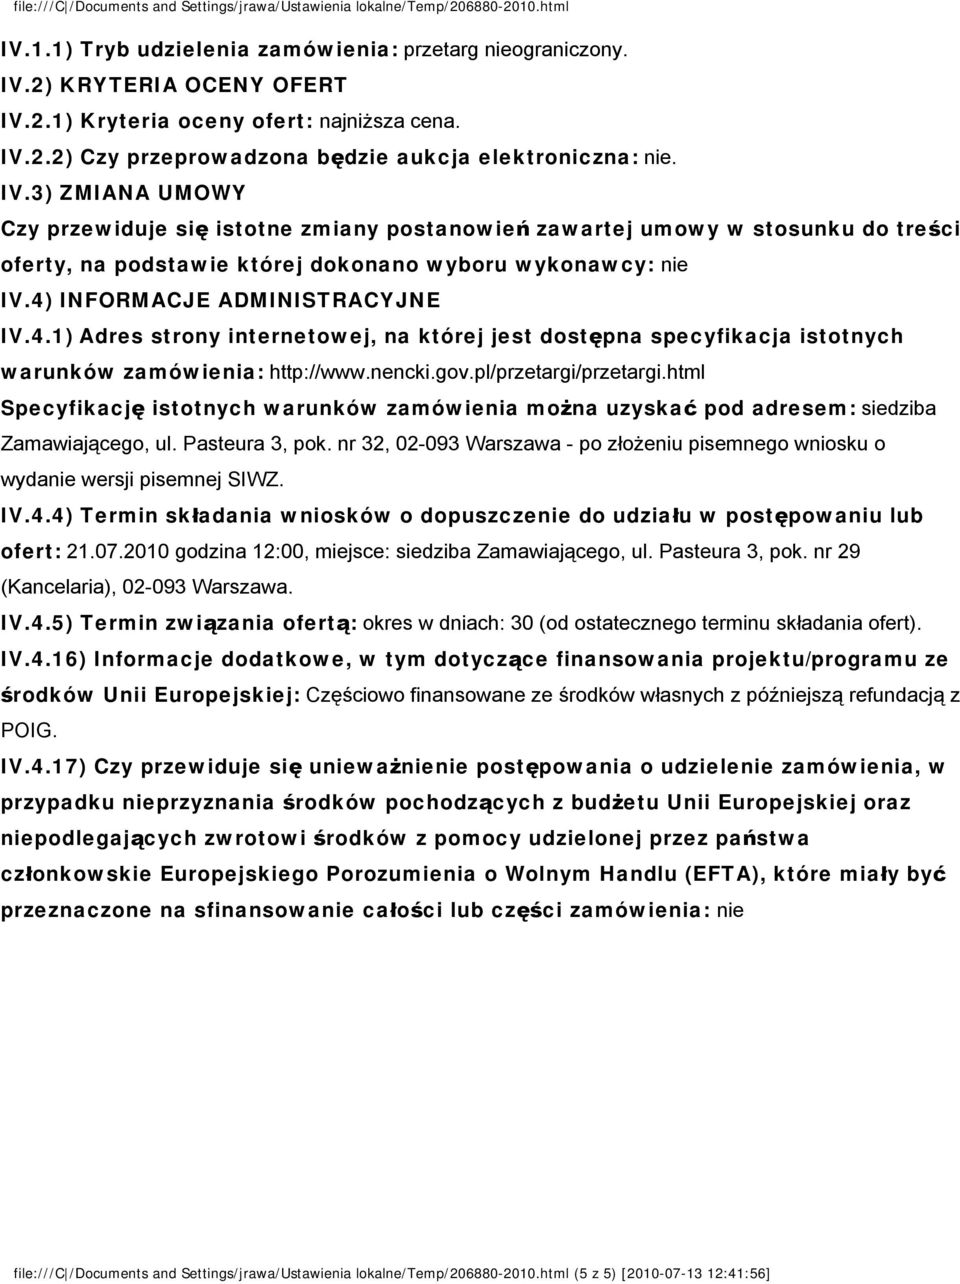 4) INFORMACJE ADMINISTRACYJNE IV.4.1) Adres strony internetowej, na której jest dostępna specyfikacja istotnych warunków zamówienia: http://www.nencki.gov.pl/przetargi/przetargi.